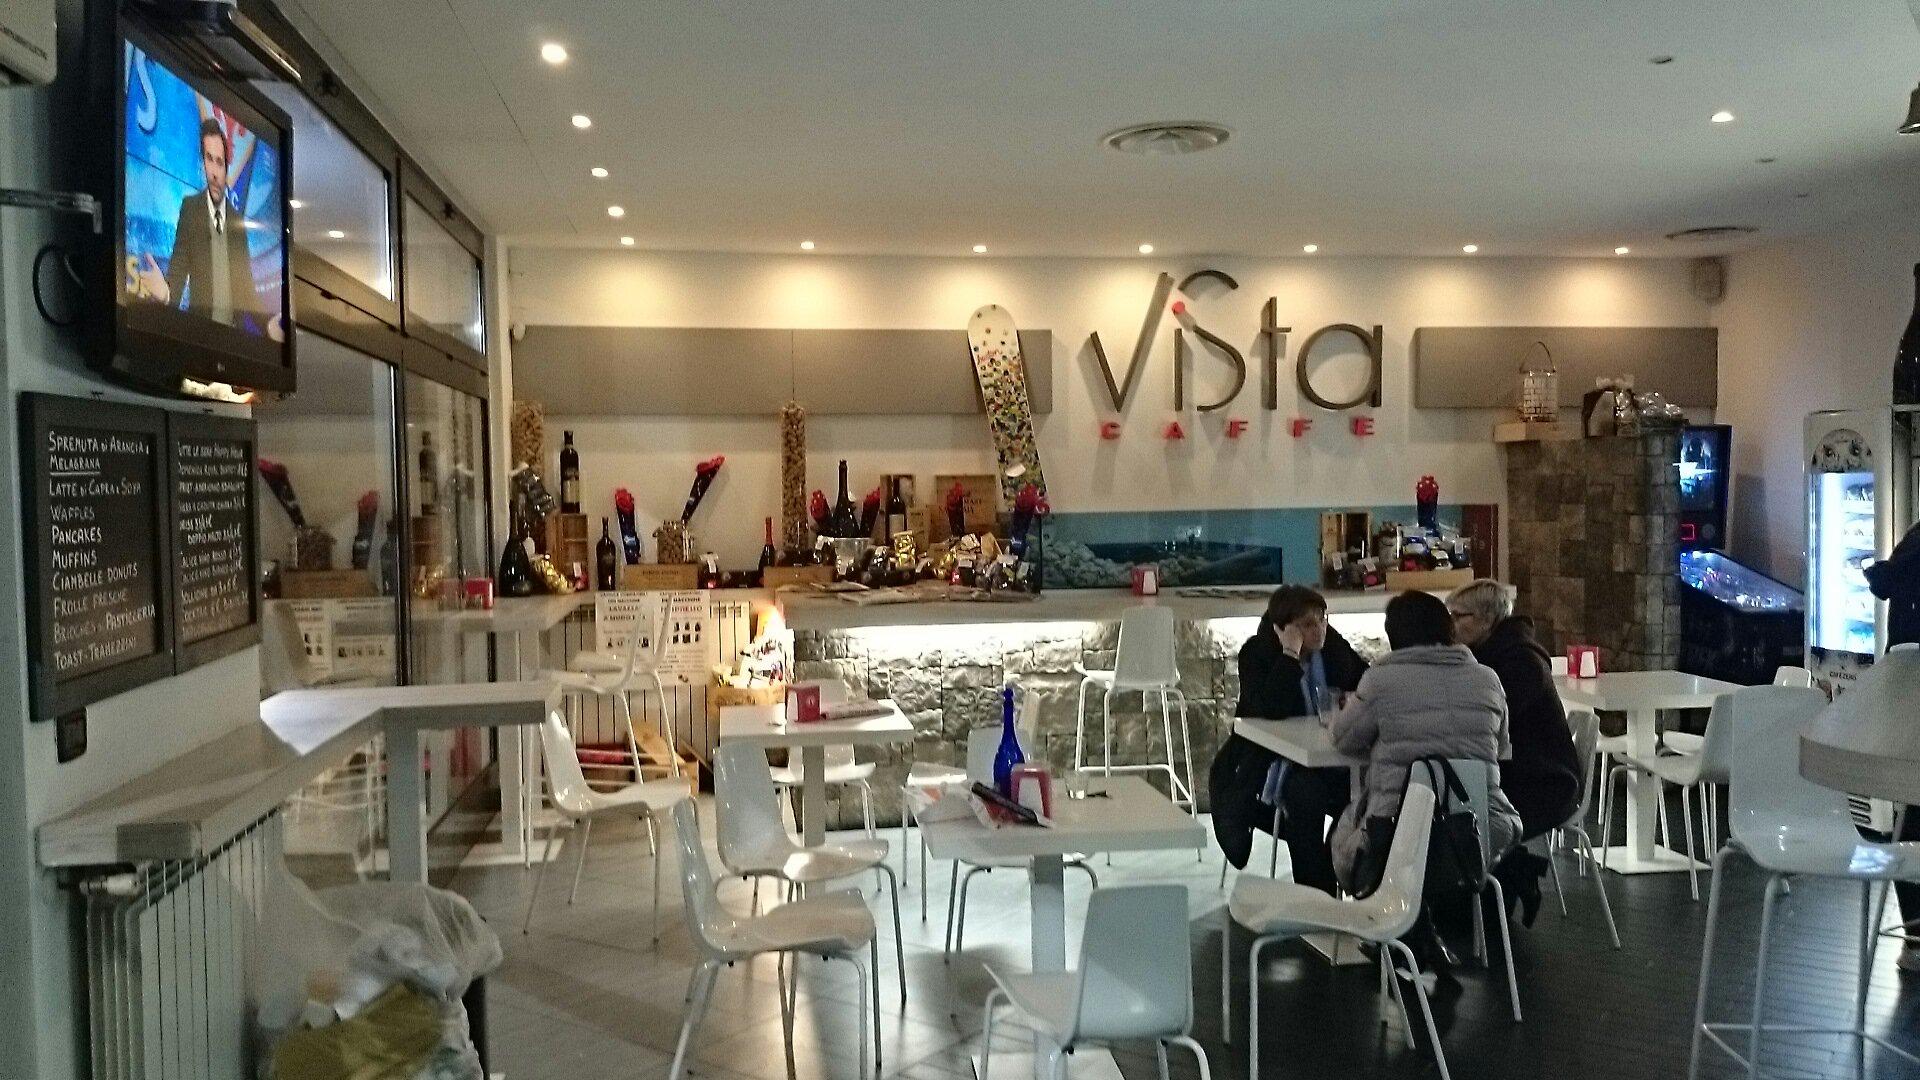 Vista Caffe'